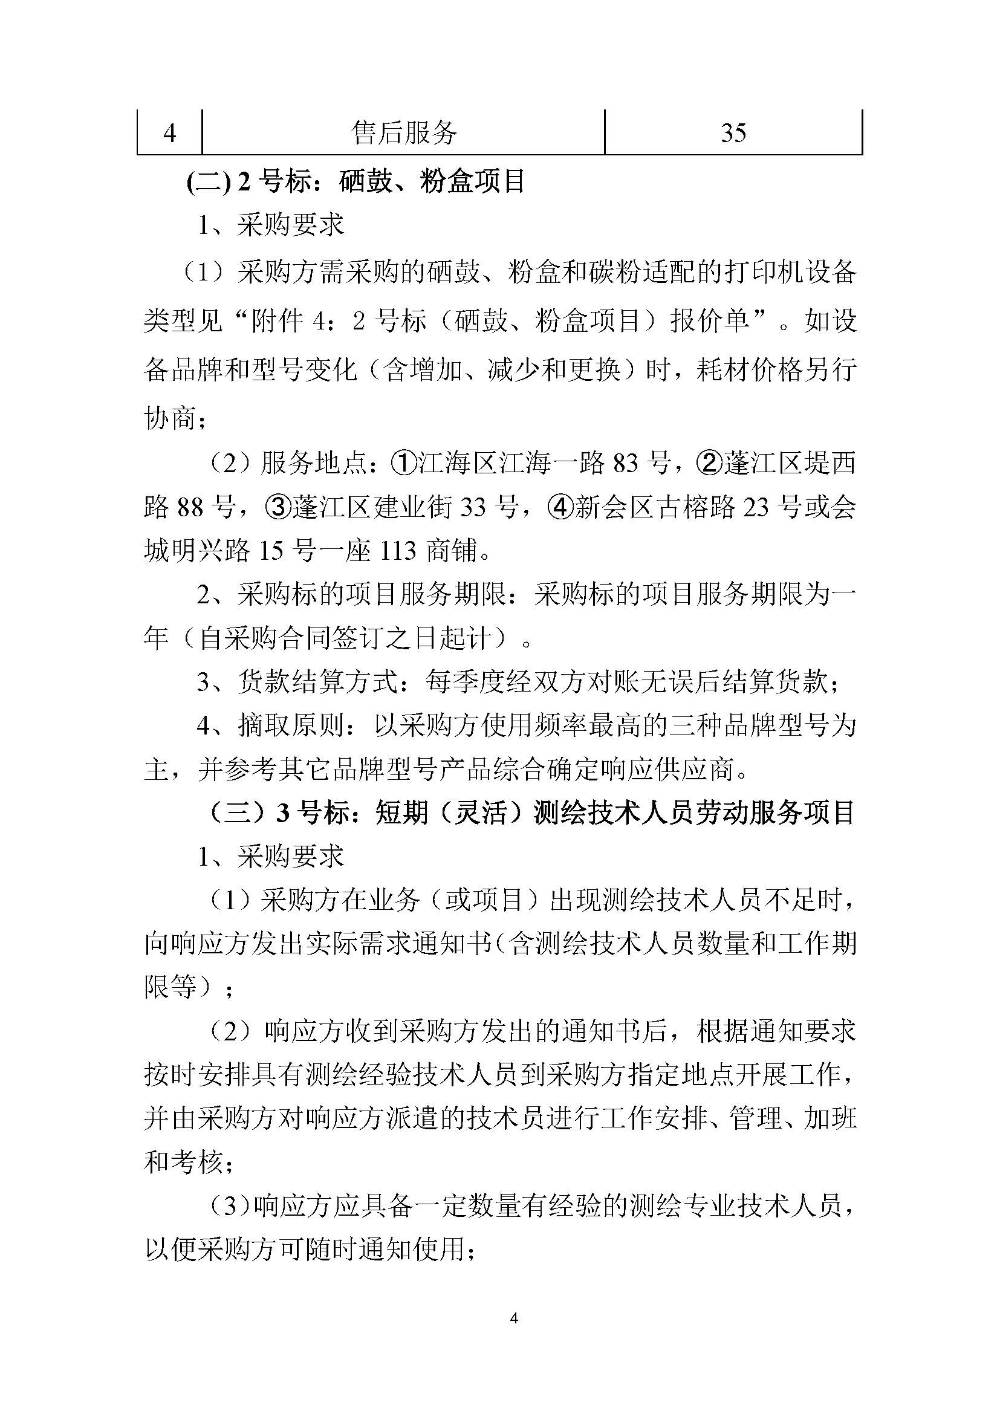 210420江门市国土测绘大队采购计算机设备维修和保养服务等项目采购公告 (4).jpg